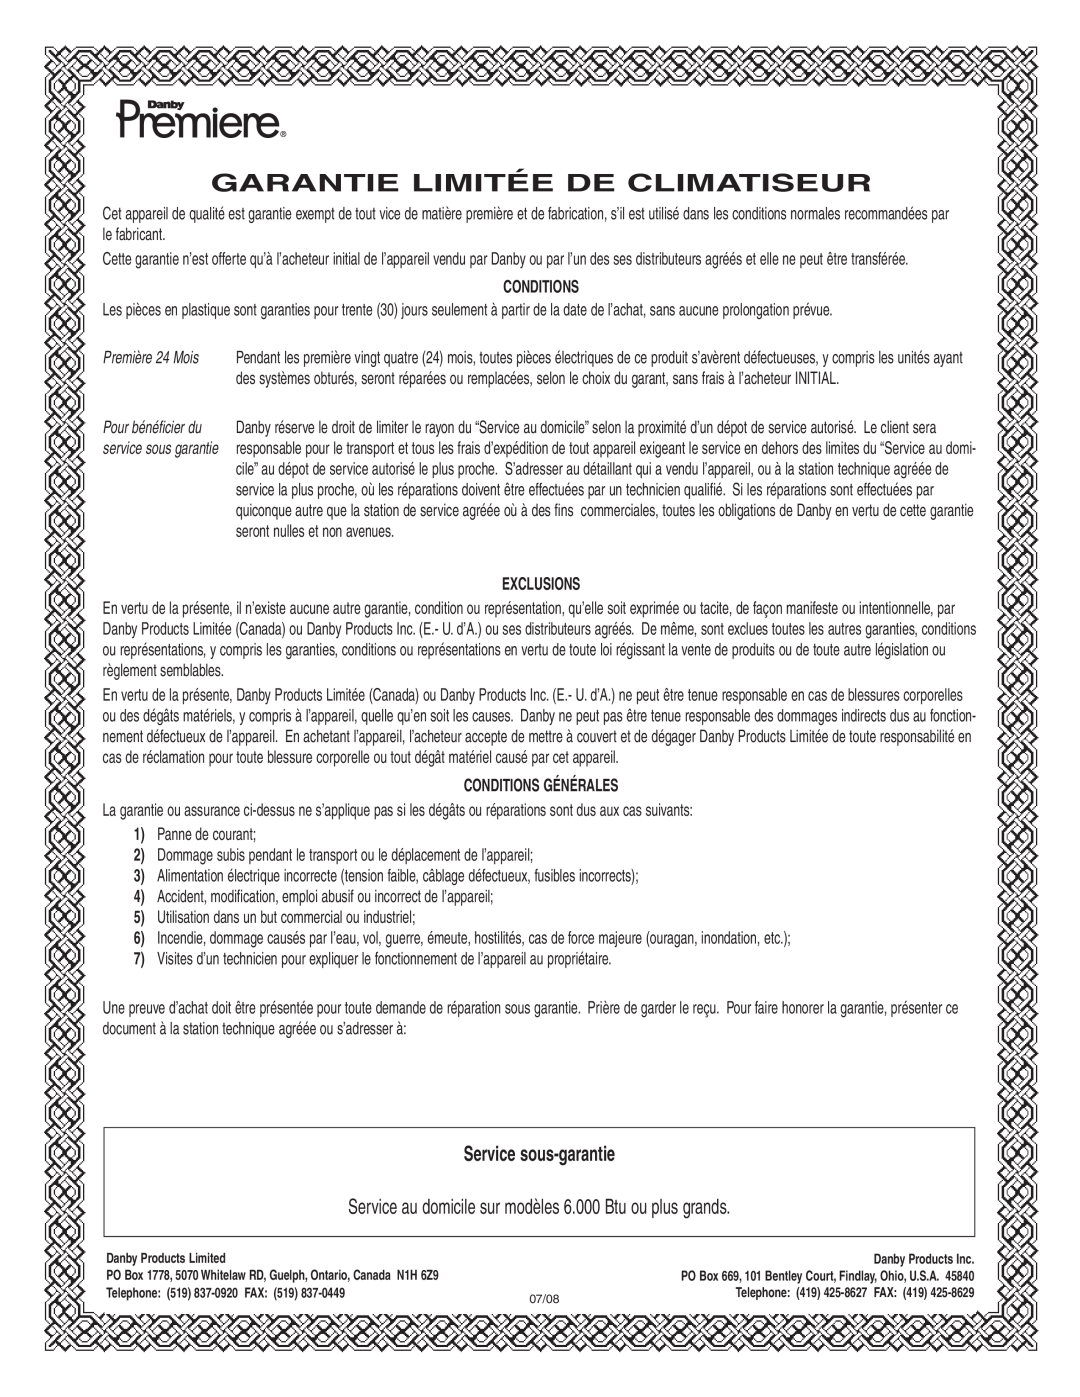 Danby DPAC 12099 manual Garantie Limitée De Climatiseur, Service sous-garantie, Exclusions, Conditions Générales 